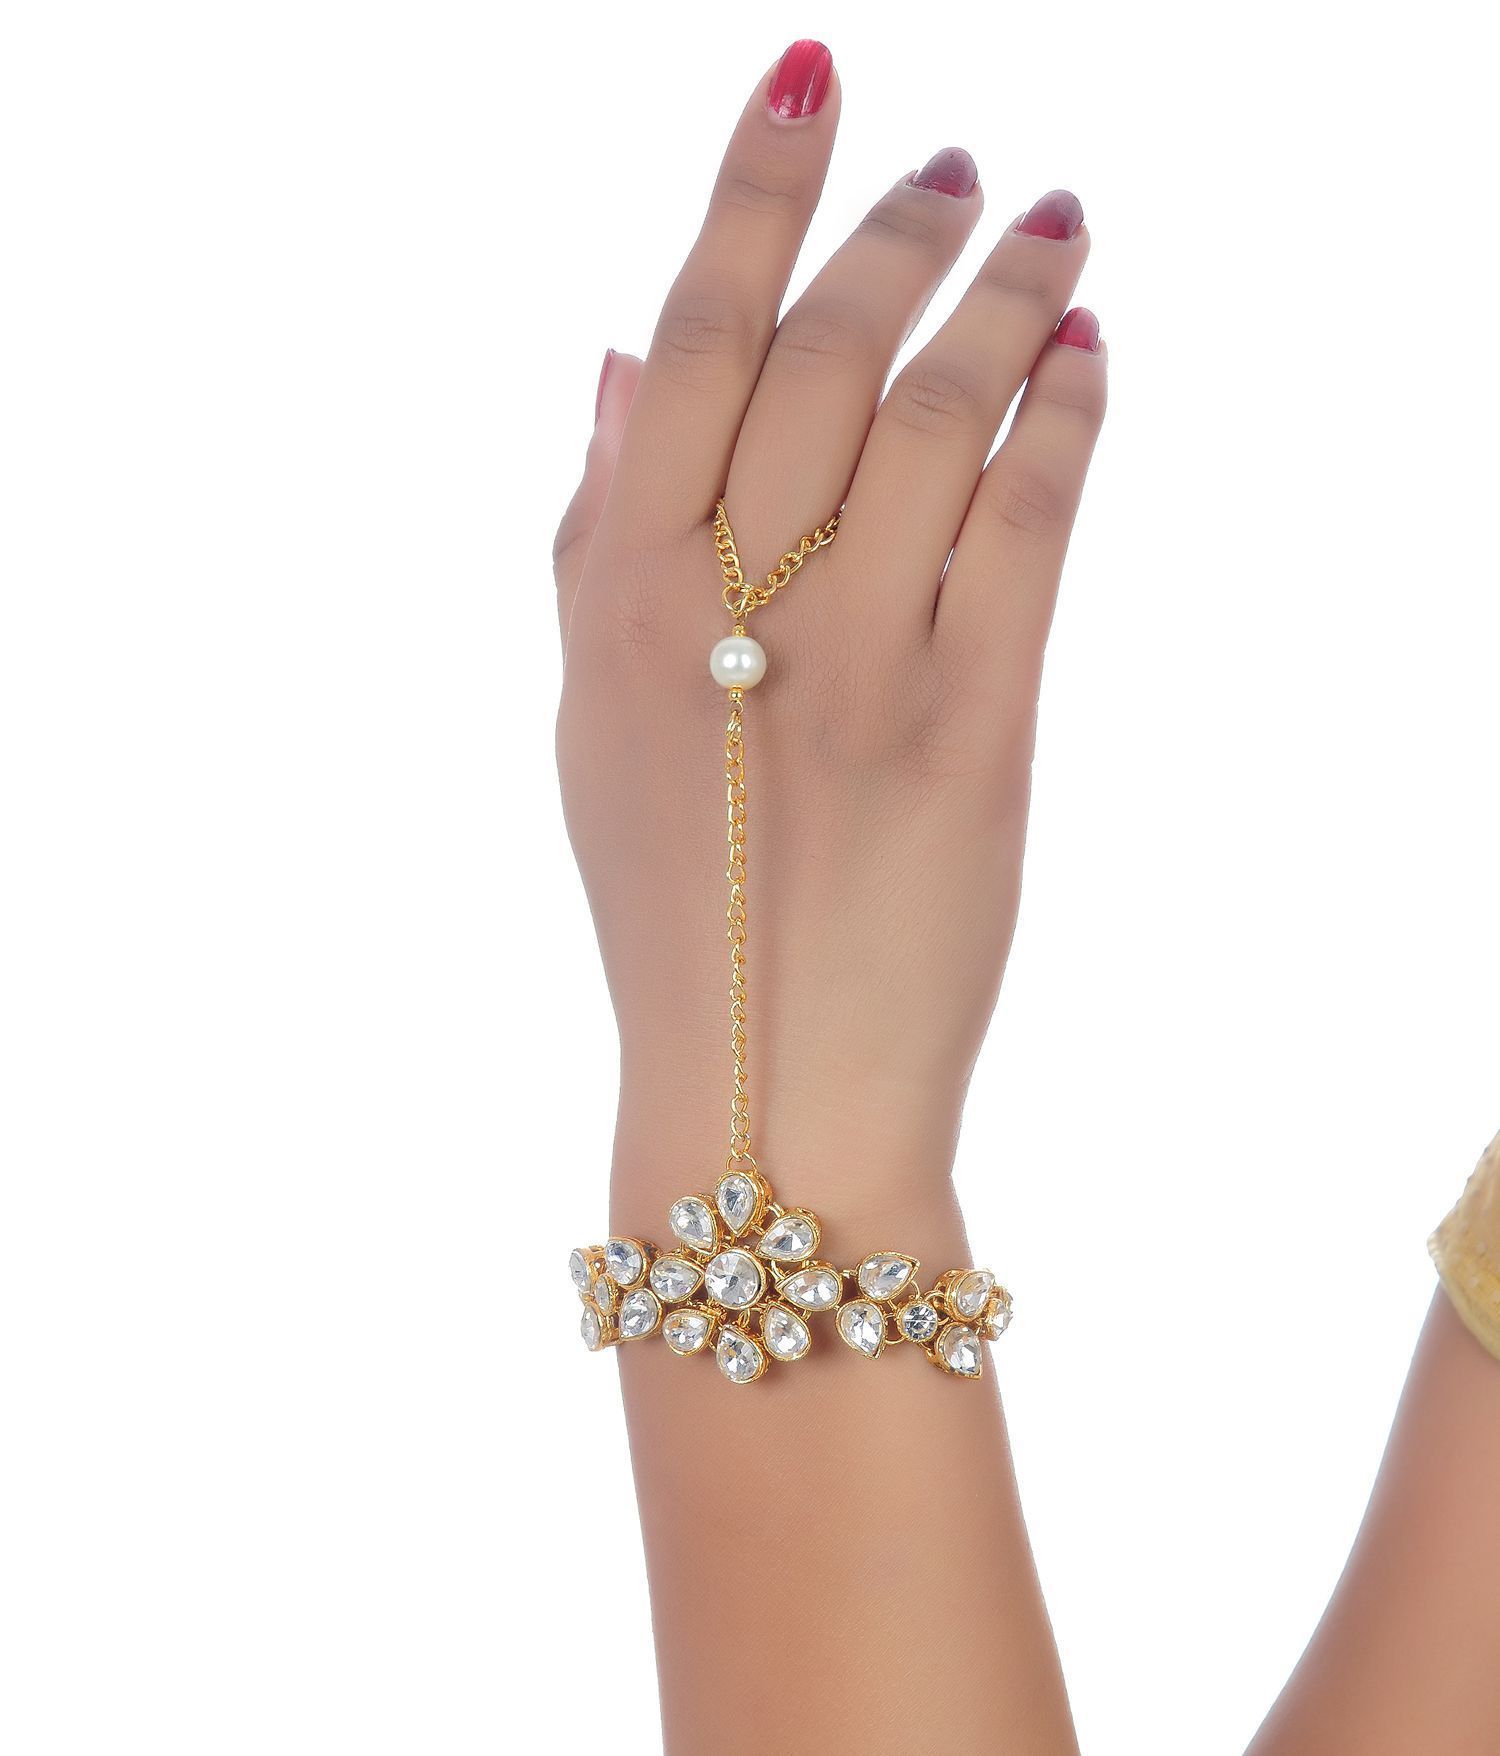 Star Hand Chain Bracelet, Star Silver Wrap Bracelet, Adjustable Bracelet,  Ring Bracelet, Gift for Her, Gold Finger Bracelet, Body Jewelry - Etsy  Singapore